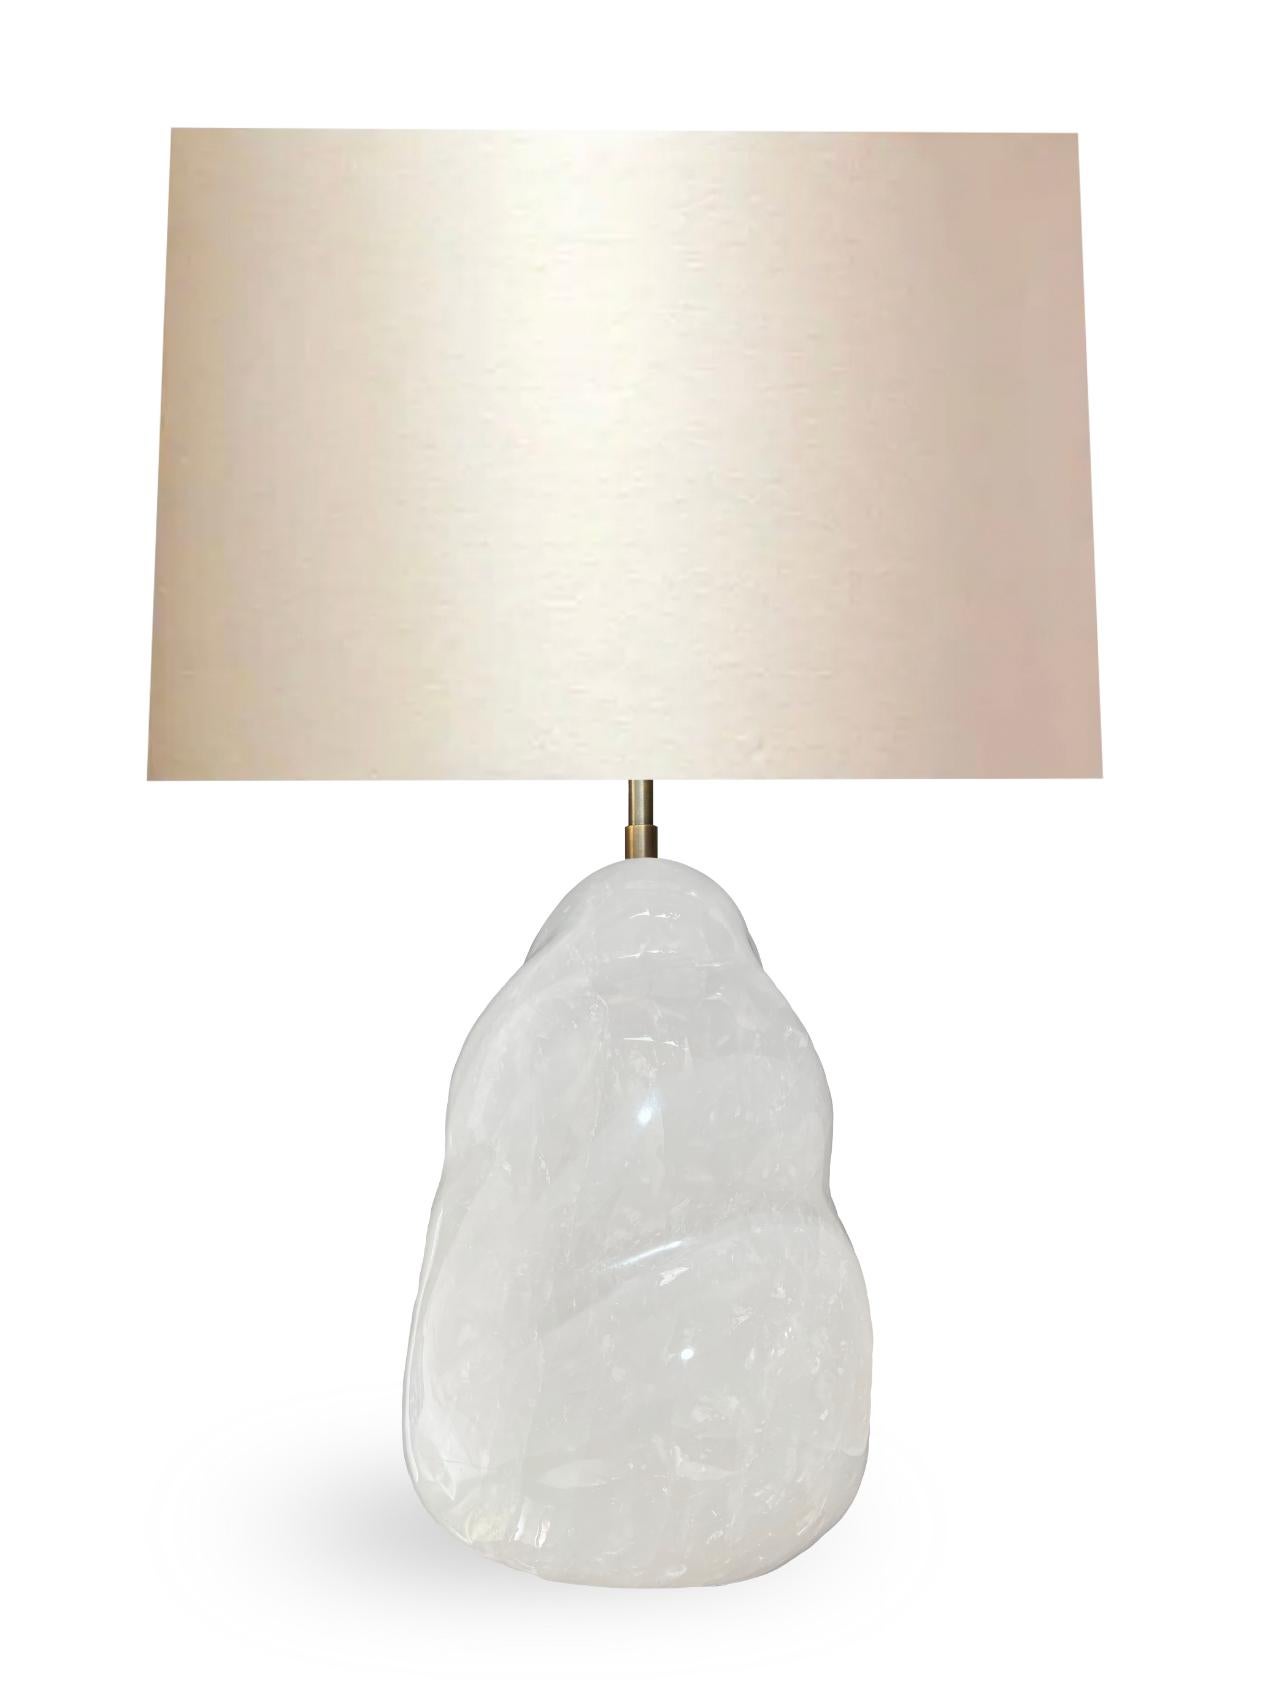 natural crystal lamps